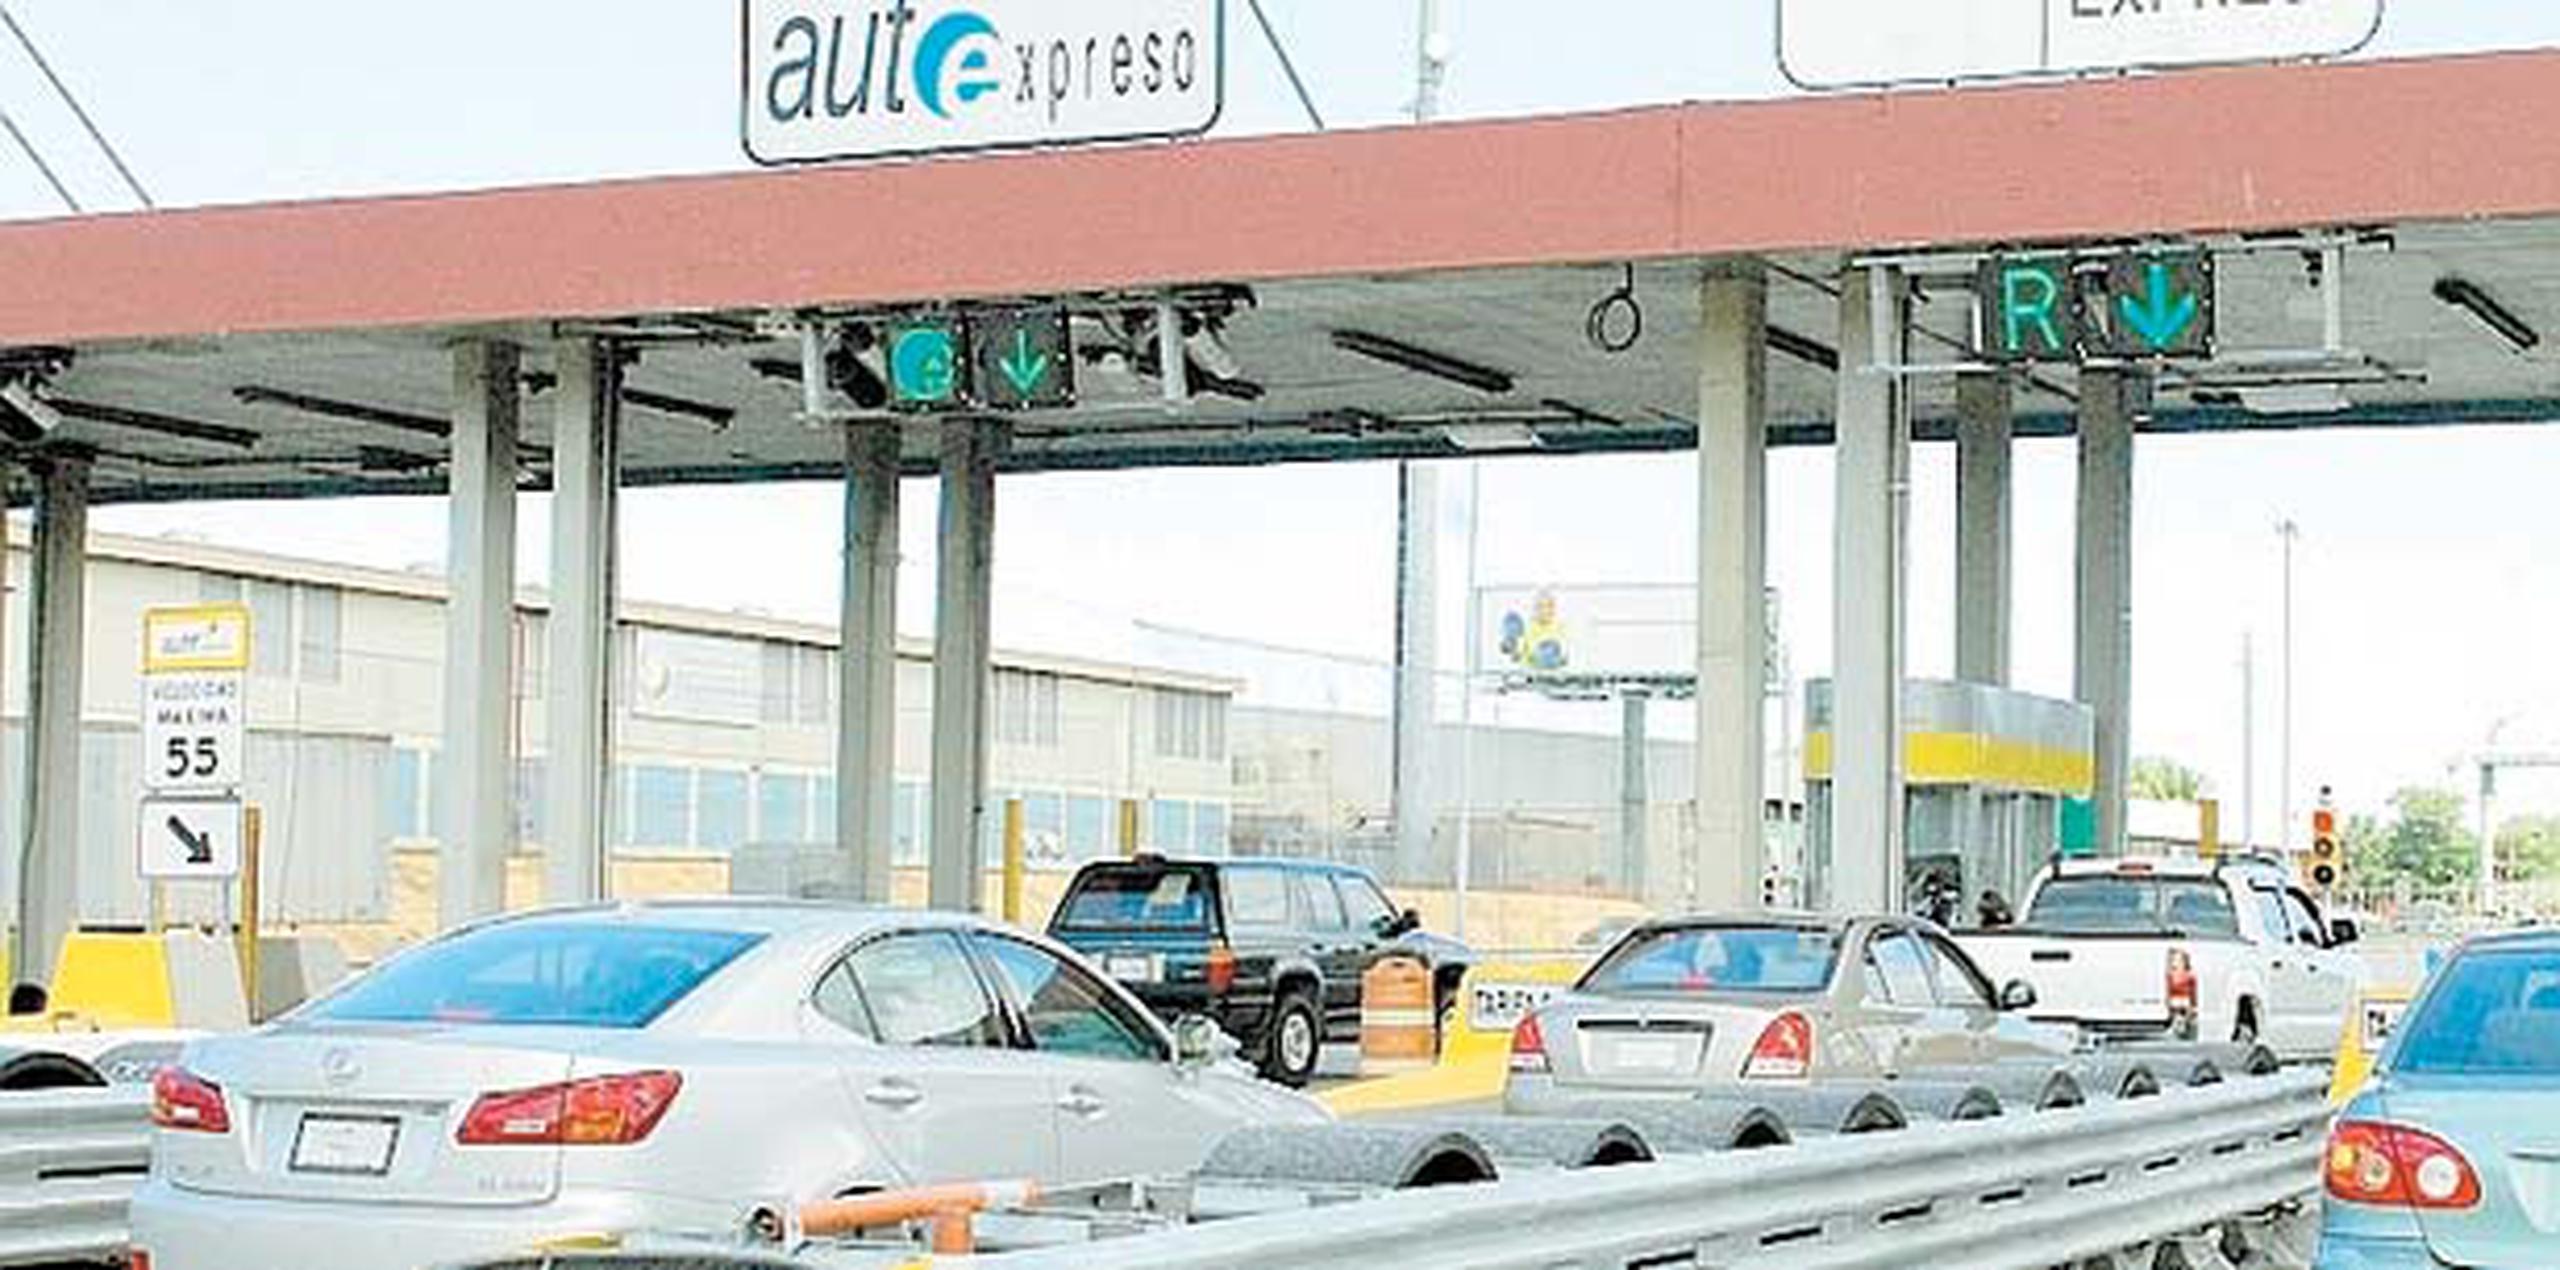 El representante Ramón Luis Cruz Burgos opinó que 3,900 recursos de revisión adjudicados a favor del conductor evidencian demasiados errores en el sistema AutoExpreso. (Archivo)